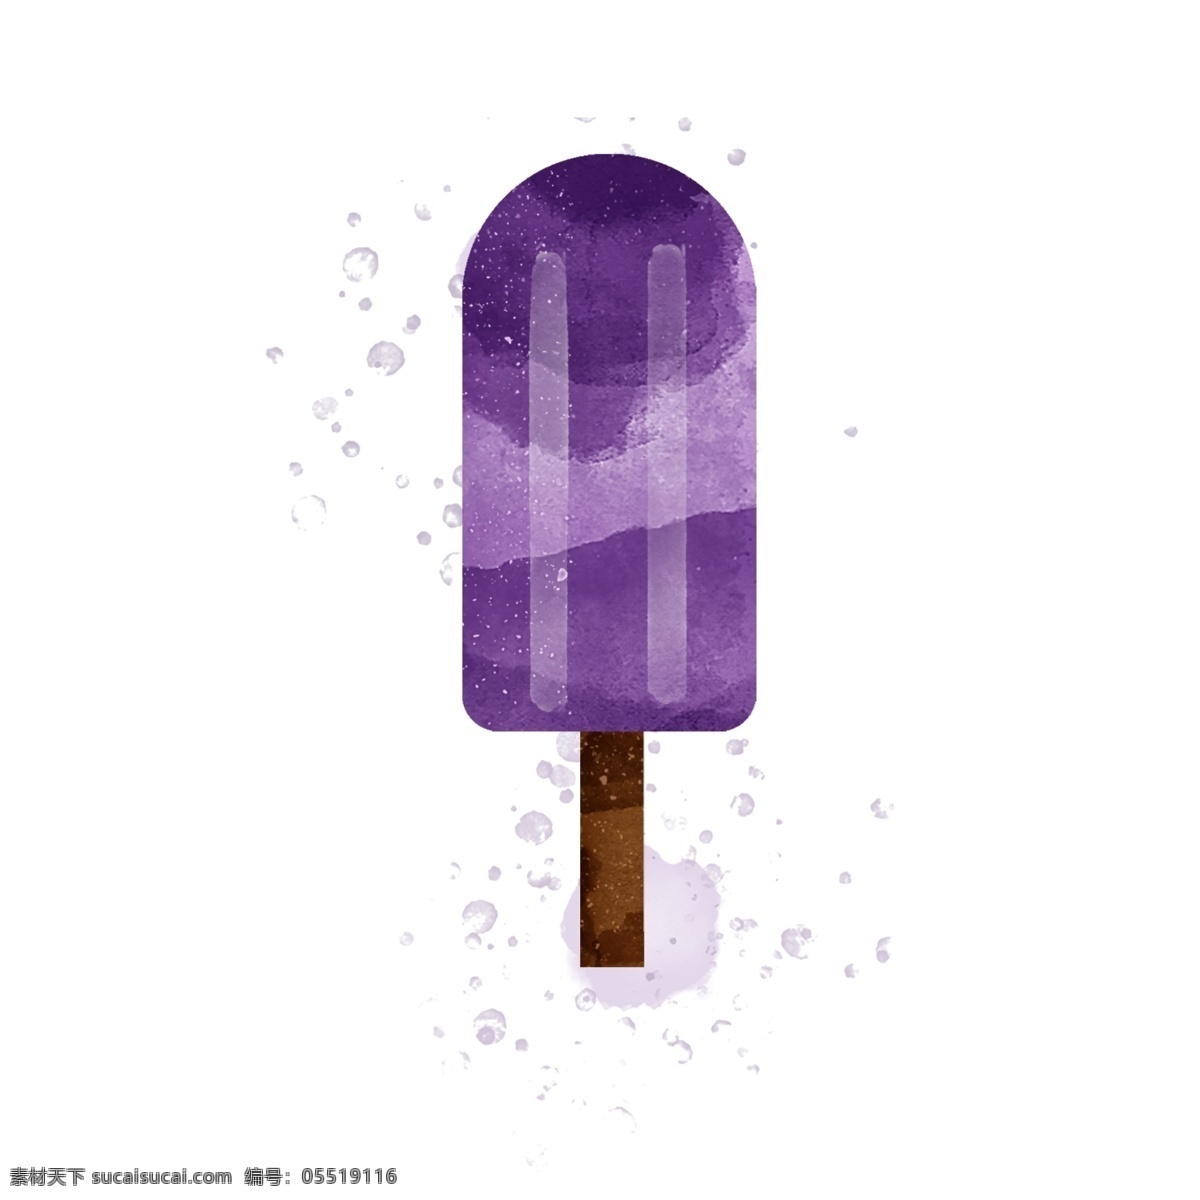 水彩 笔触 紫色 葡萄 味 冰淇淋 水彩冰淇淋 水彩冰棒 水彩冰棍 葡萄味冰淇淋 葡萄味冰棒 奶油葡萄冰棍